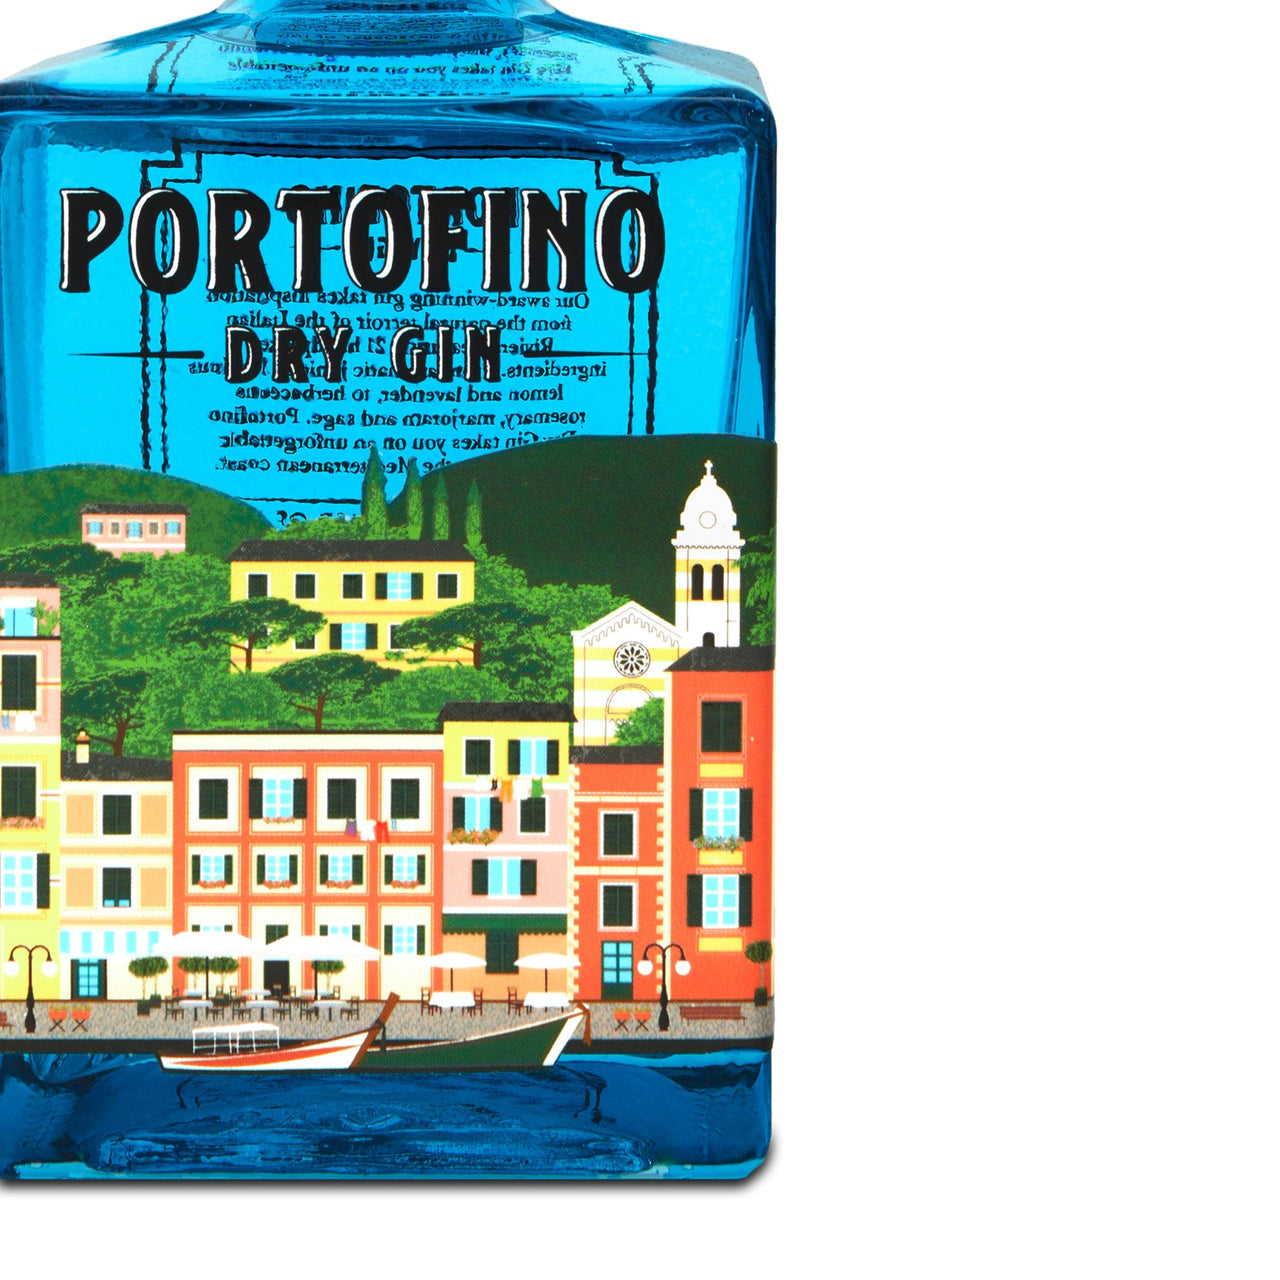 PORTOFINO DRY GIN 500 ml - Portofino Dry Gin